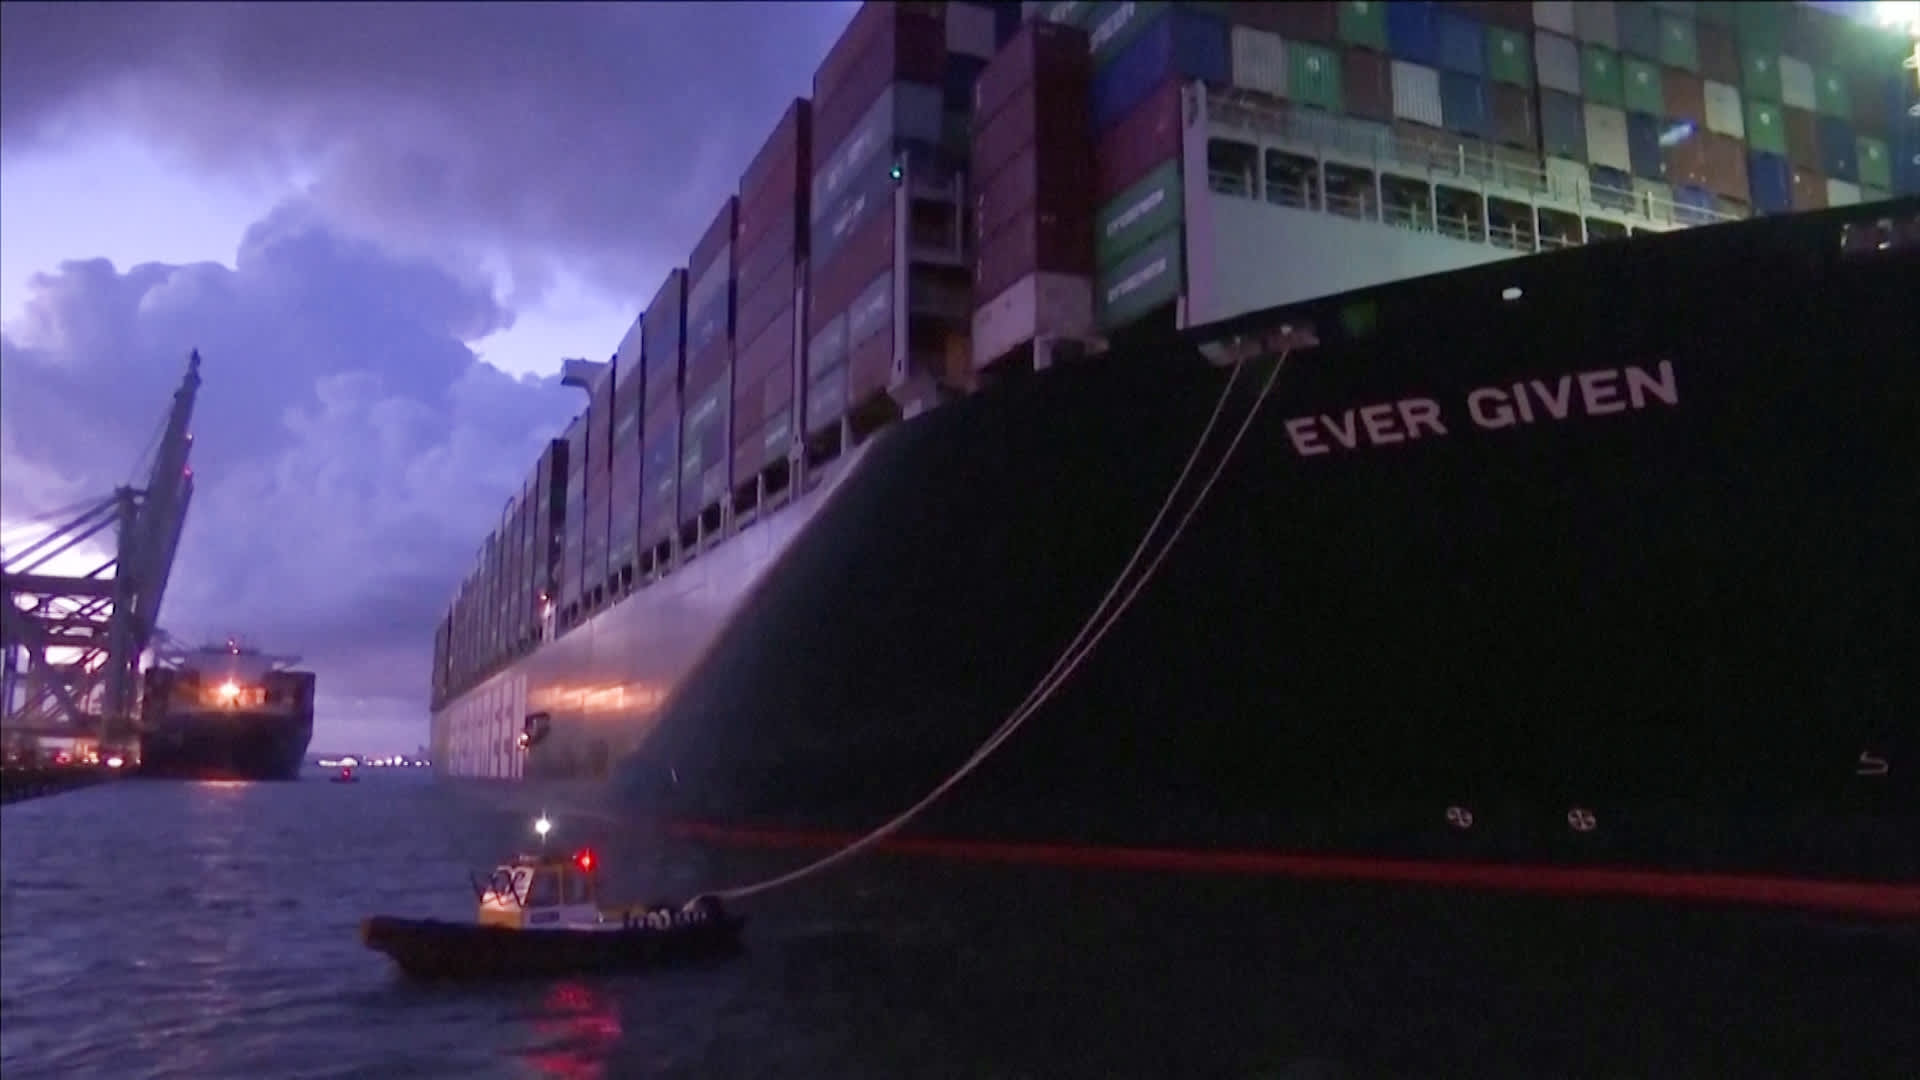 Suezin kanavan tukkinut konttialus Ever Given saapui perille Rotterdamiin